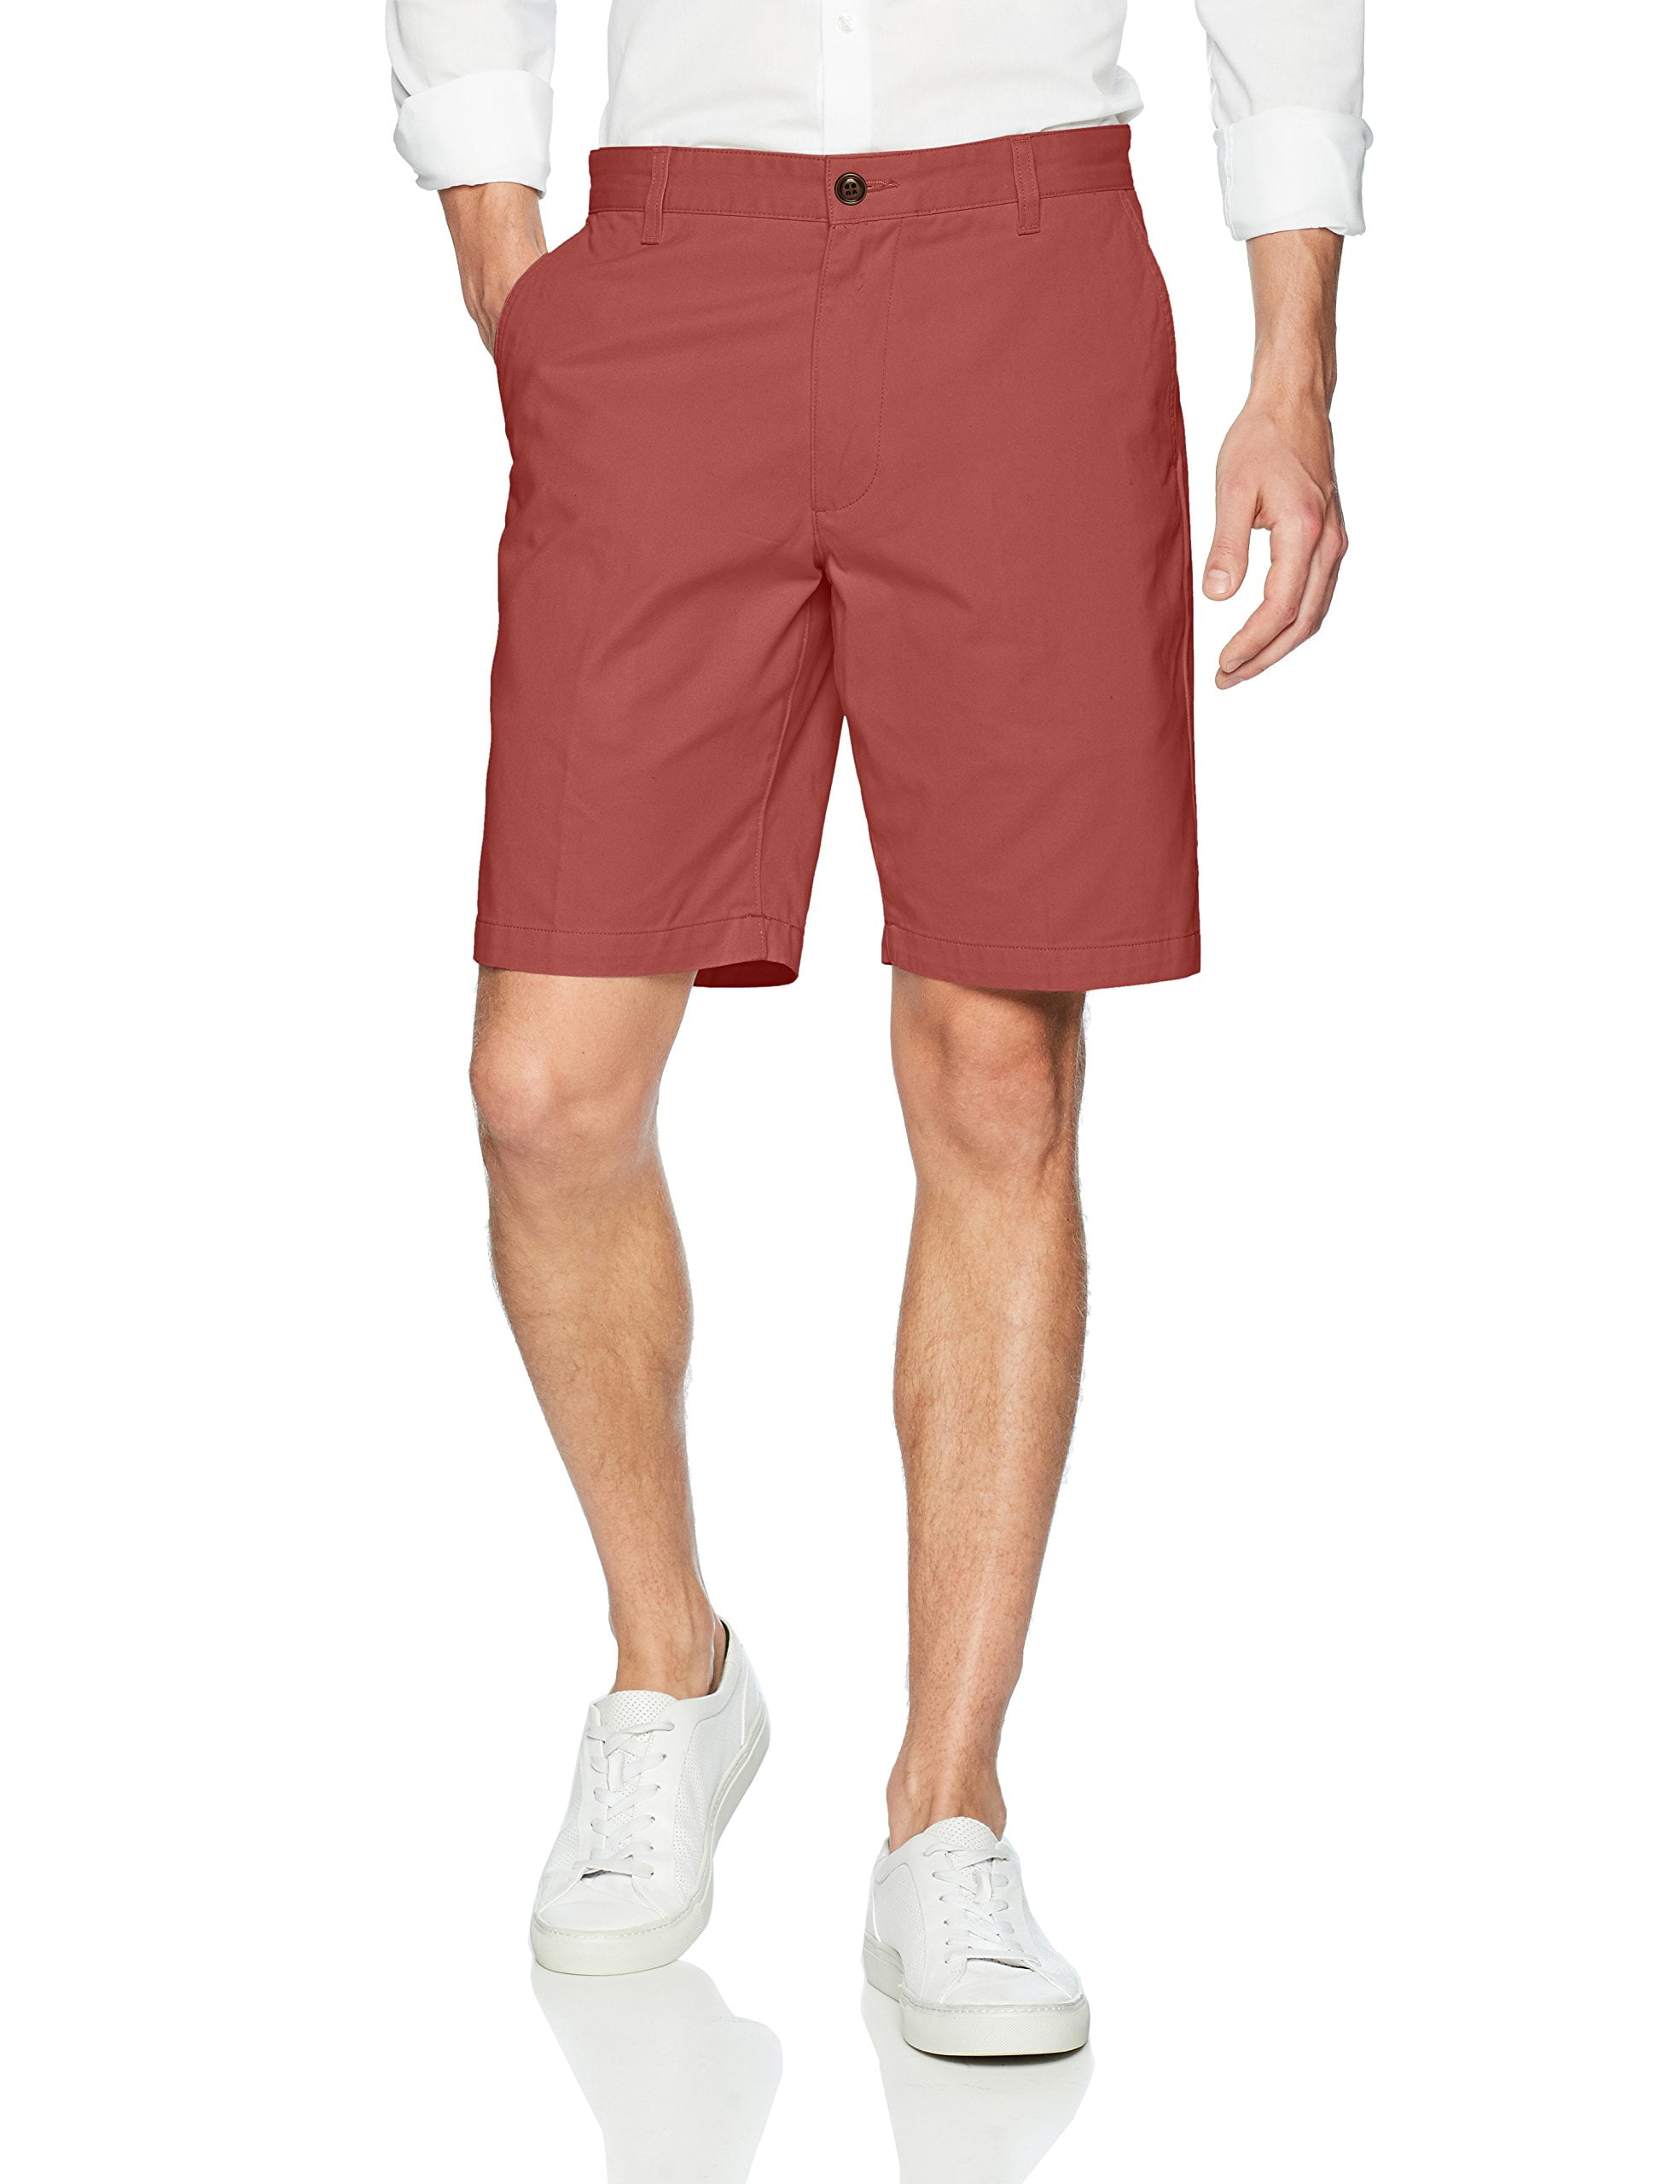 Dockers Men's Perfect Classic Fit Shorts - Walmart.com